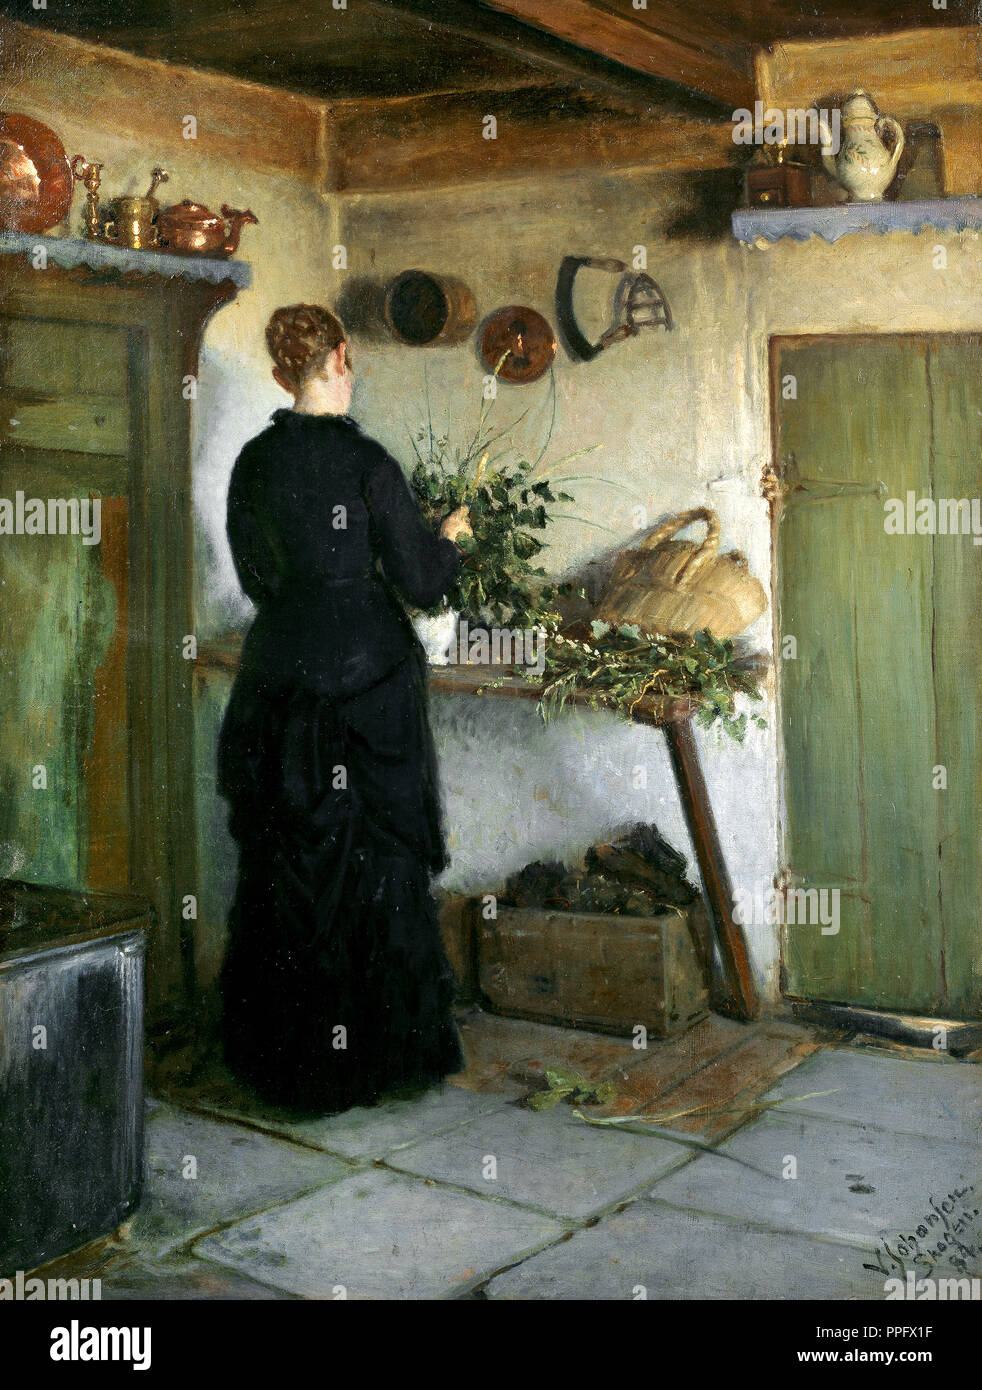 Viggo Johansen - Cuisine Intérieur. La femme de l'artiste Organisation de fleurs. 1884 Huile sur toile. Skagens Museum, Skagen, Danemark. Banque D'Images